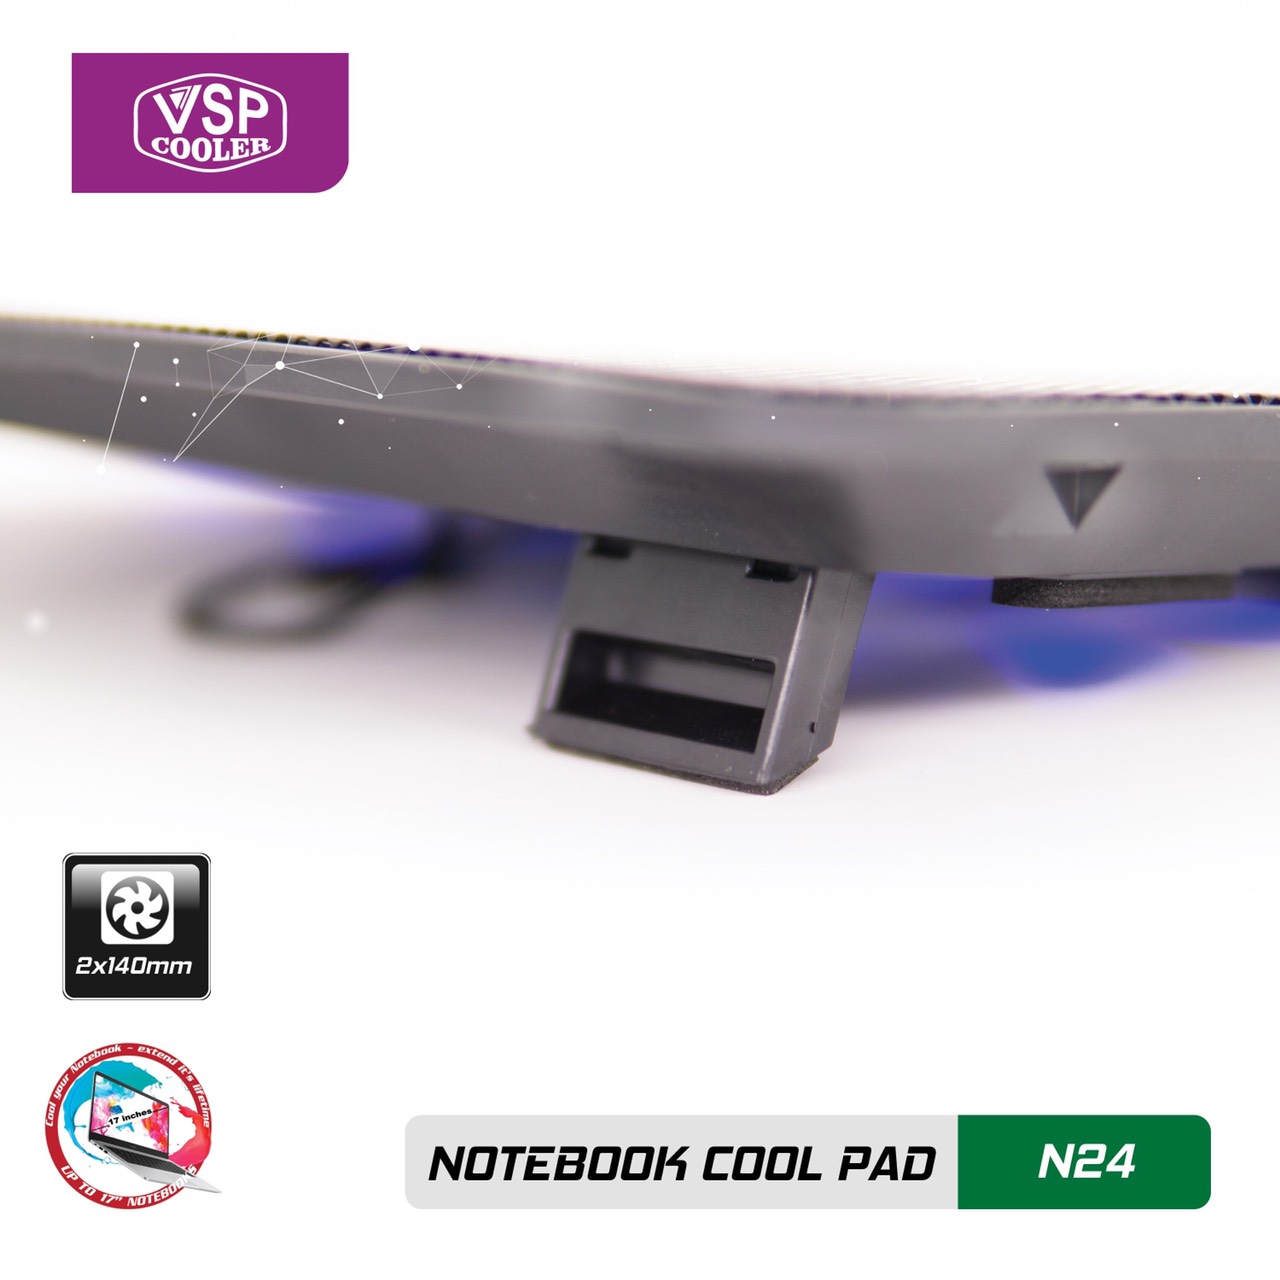 Notebook cool pad N24 - Hàng nhập khẩu